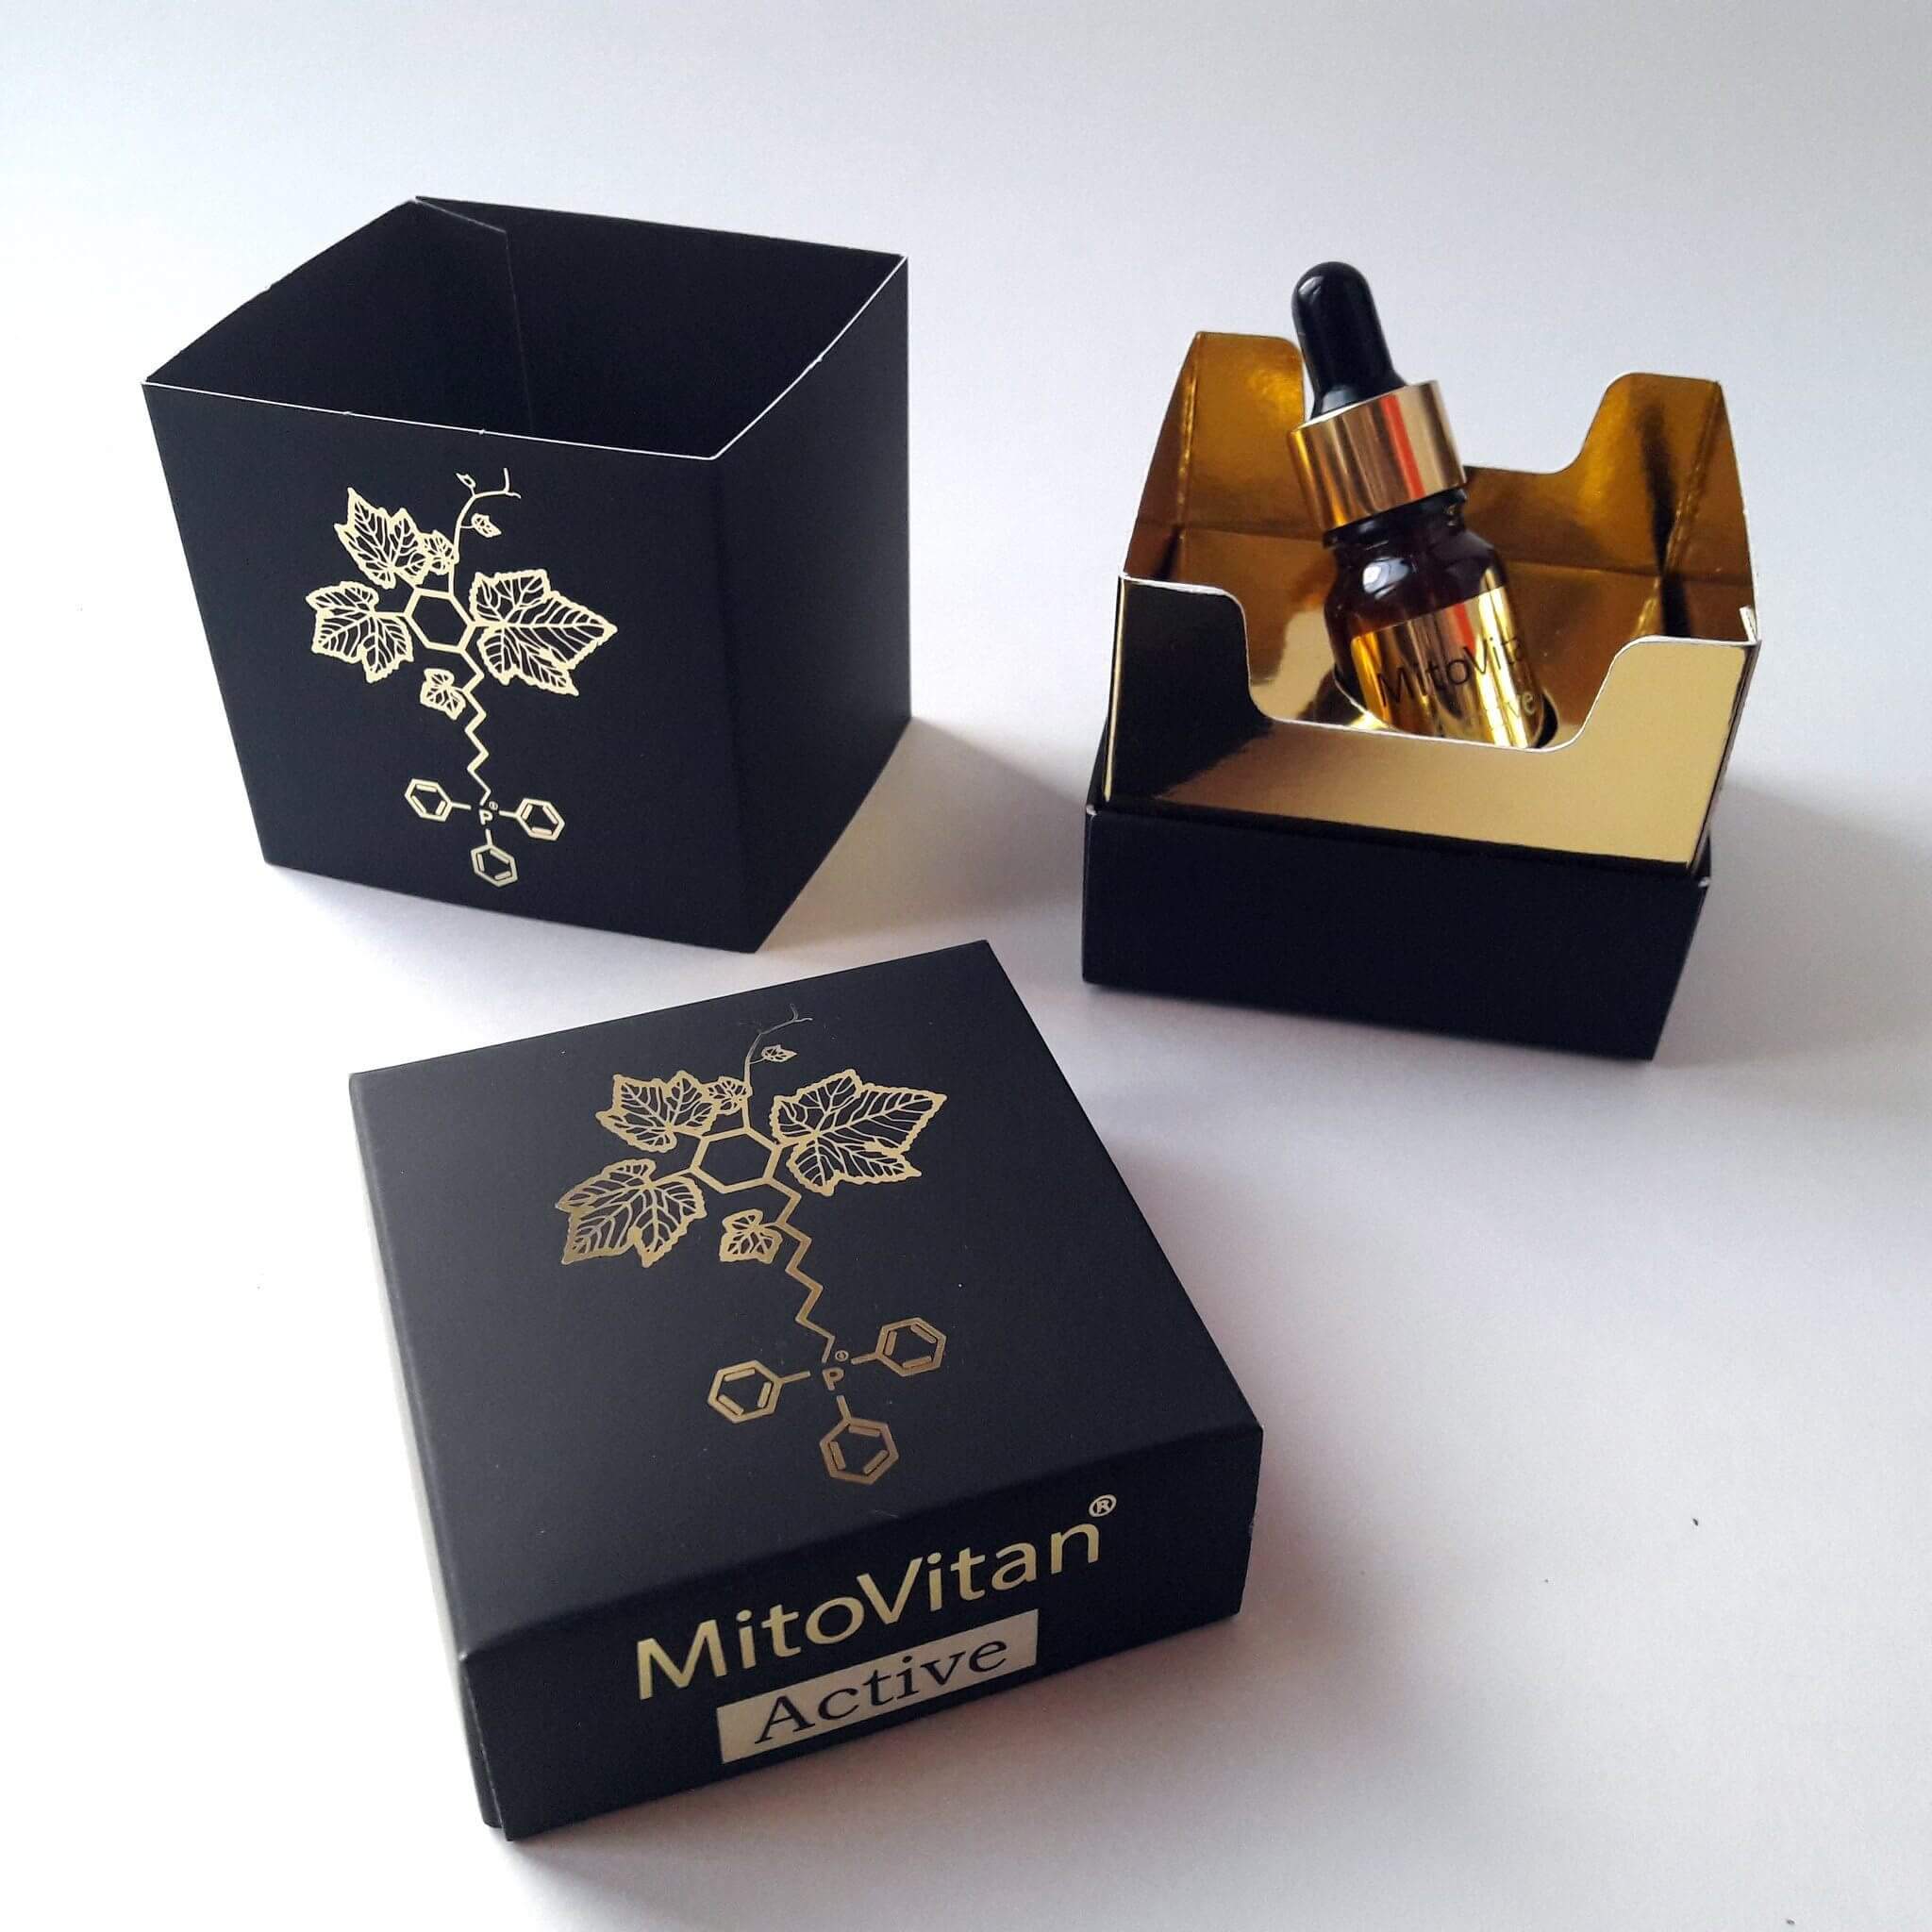 MitoVitan-concentrate-box